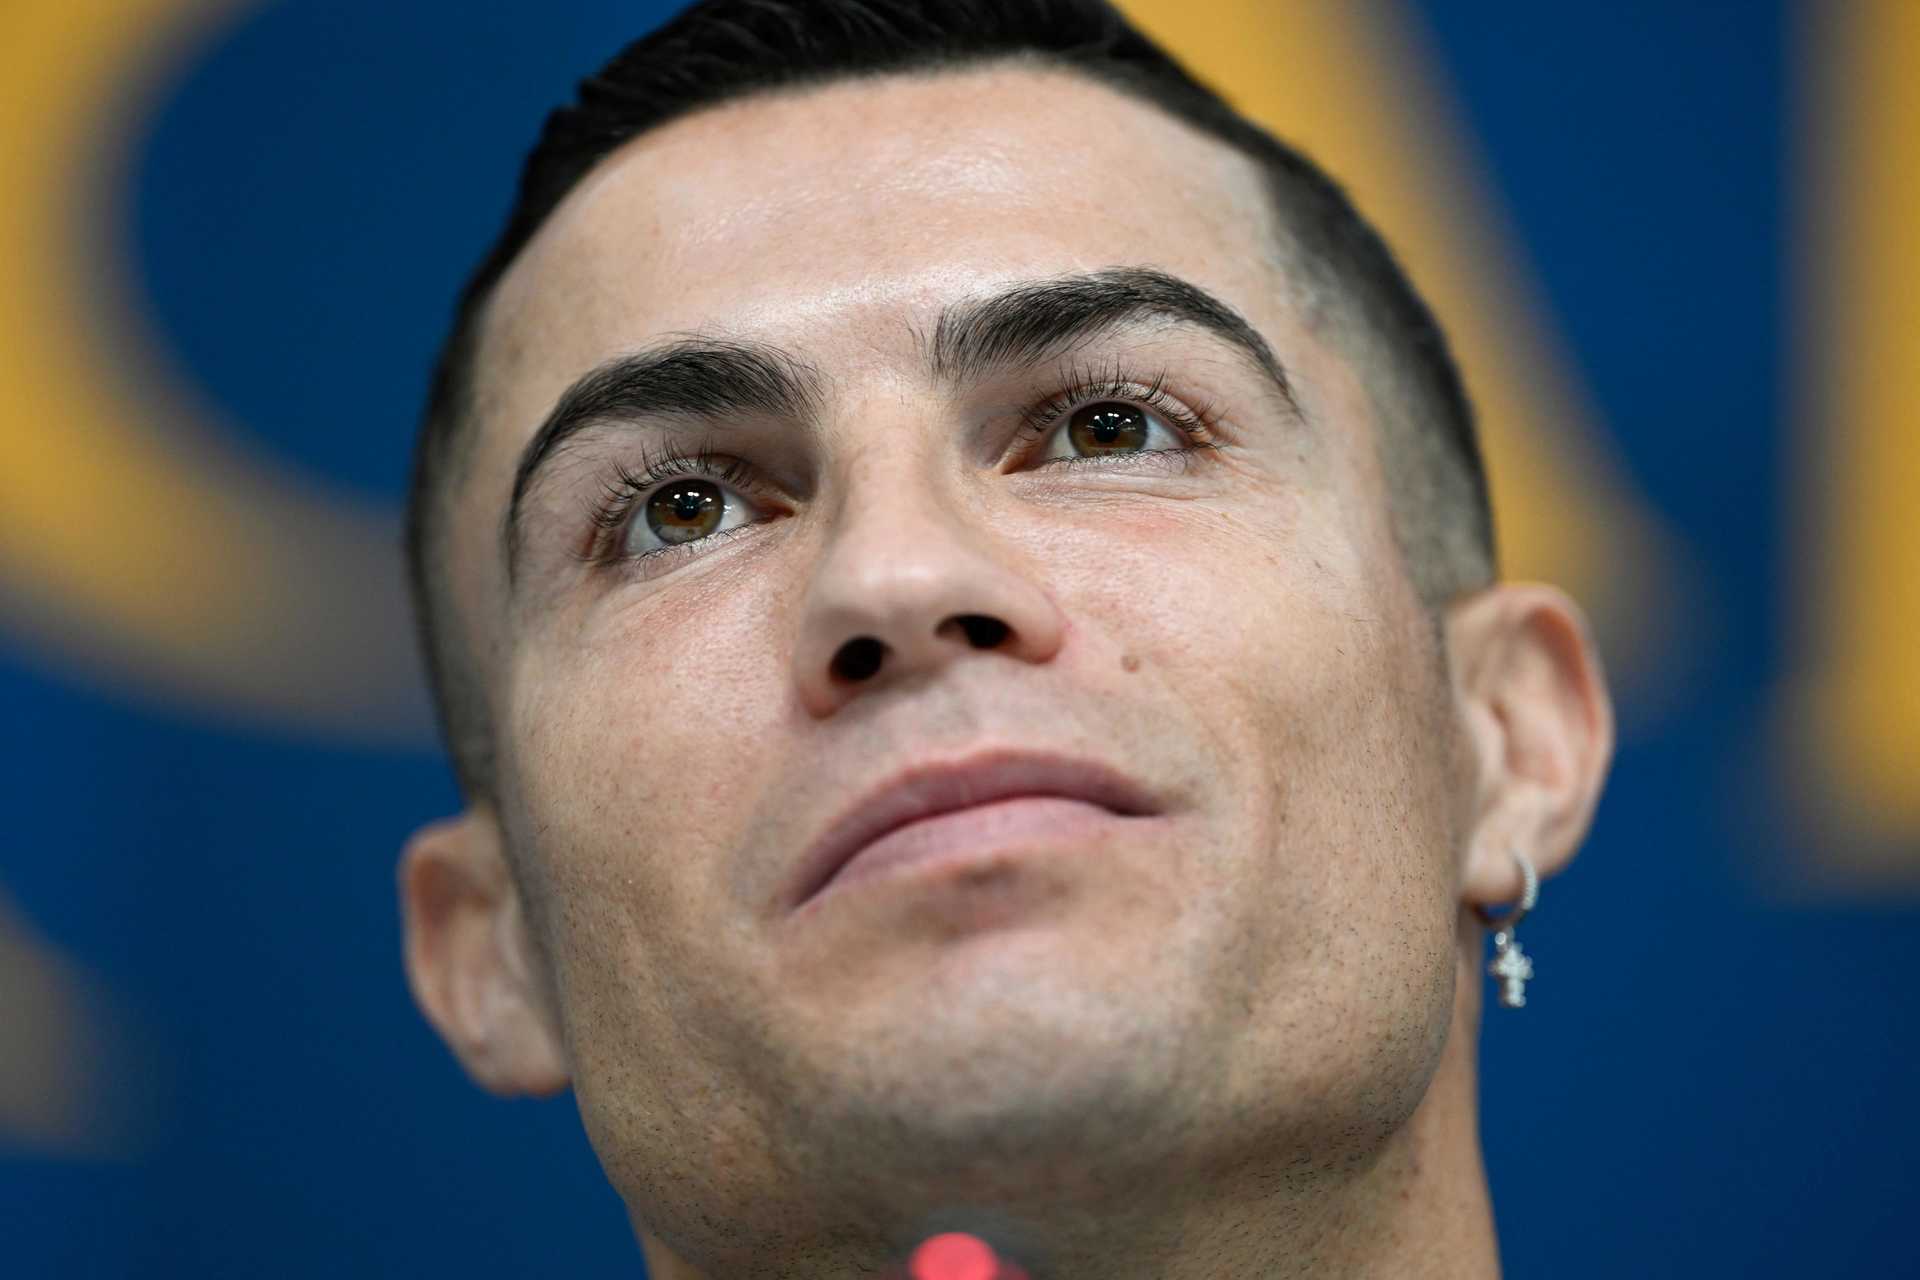 Ronaldo tem “feeling” de que Portugal pode ser campeão